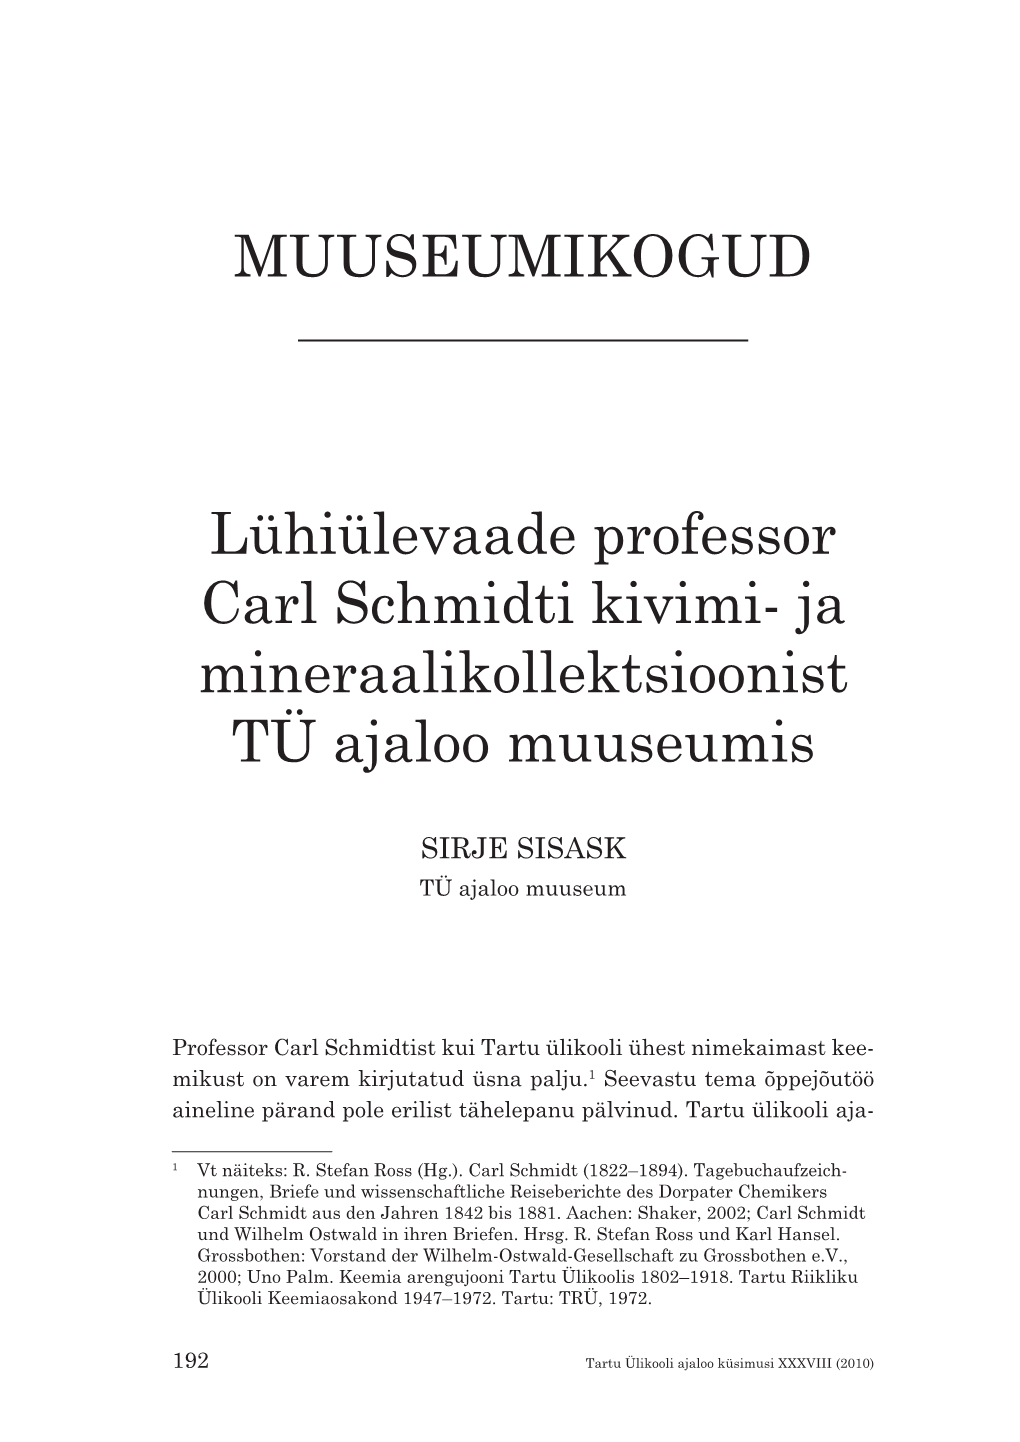 MUUSEUMIKOGUD Lühiülevaade Professor Carl Schmidti Kivimi- Ja Mineraalikollektsioonist TÜ Ajaloo Muuseumis